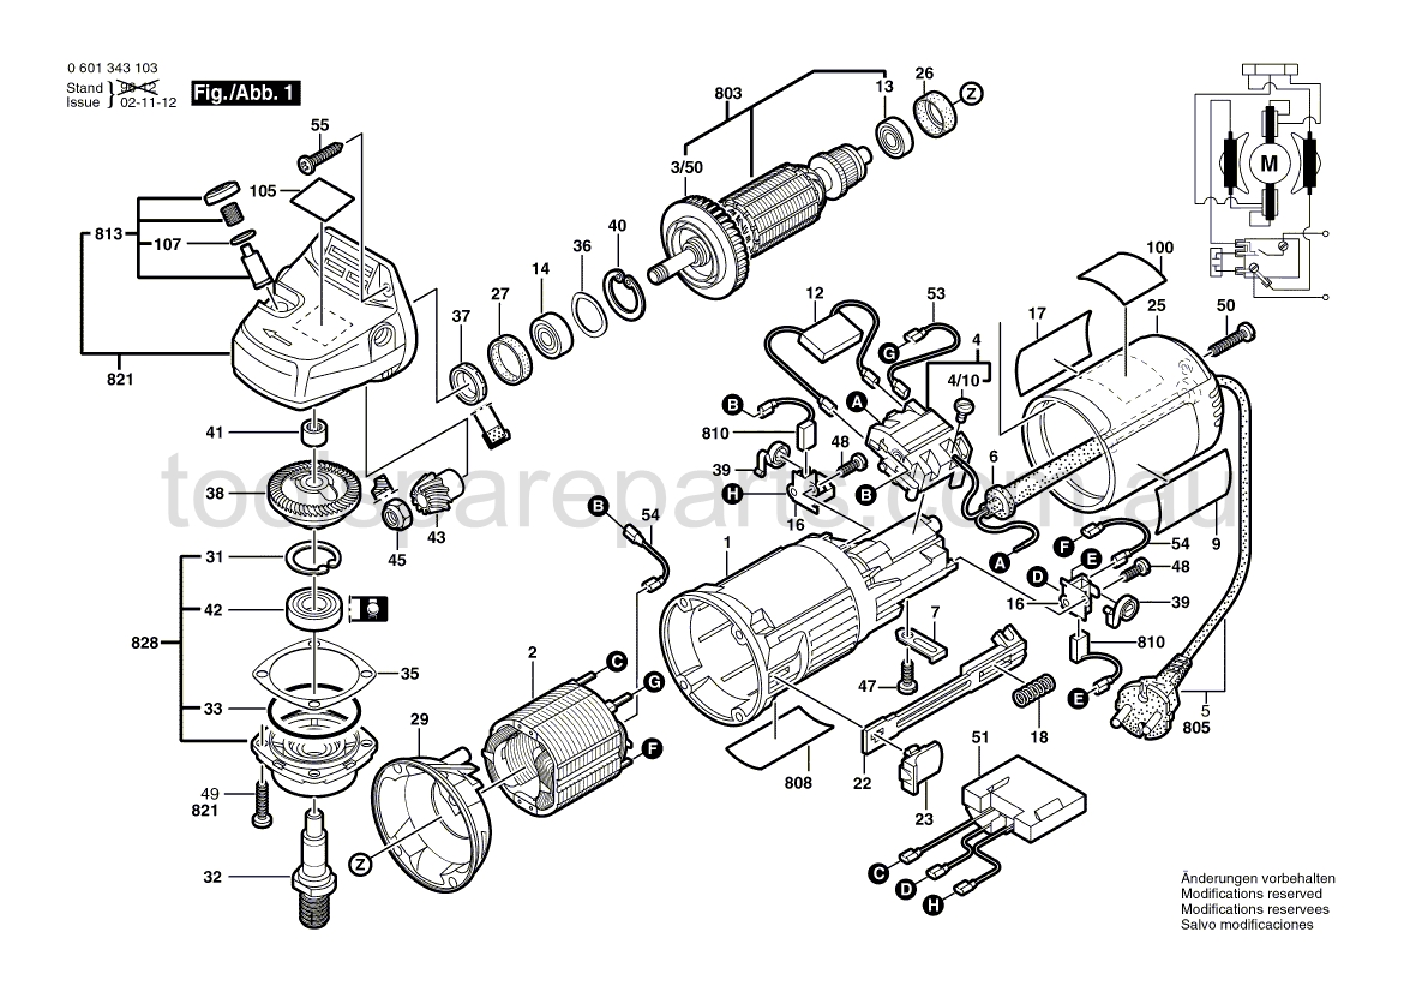 Bosch GWS 9-125 CM 0601343137  Diagram 1